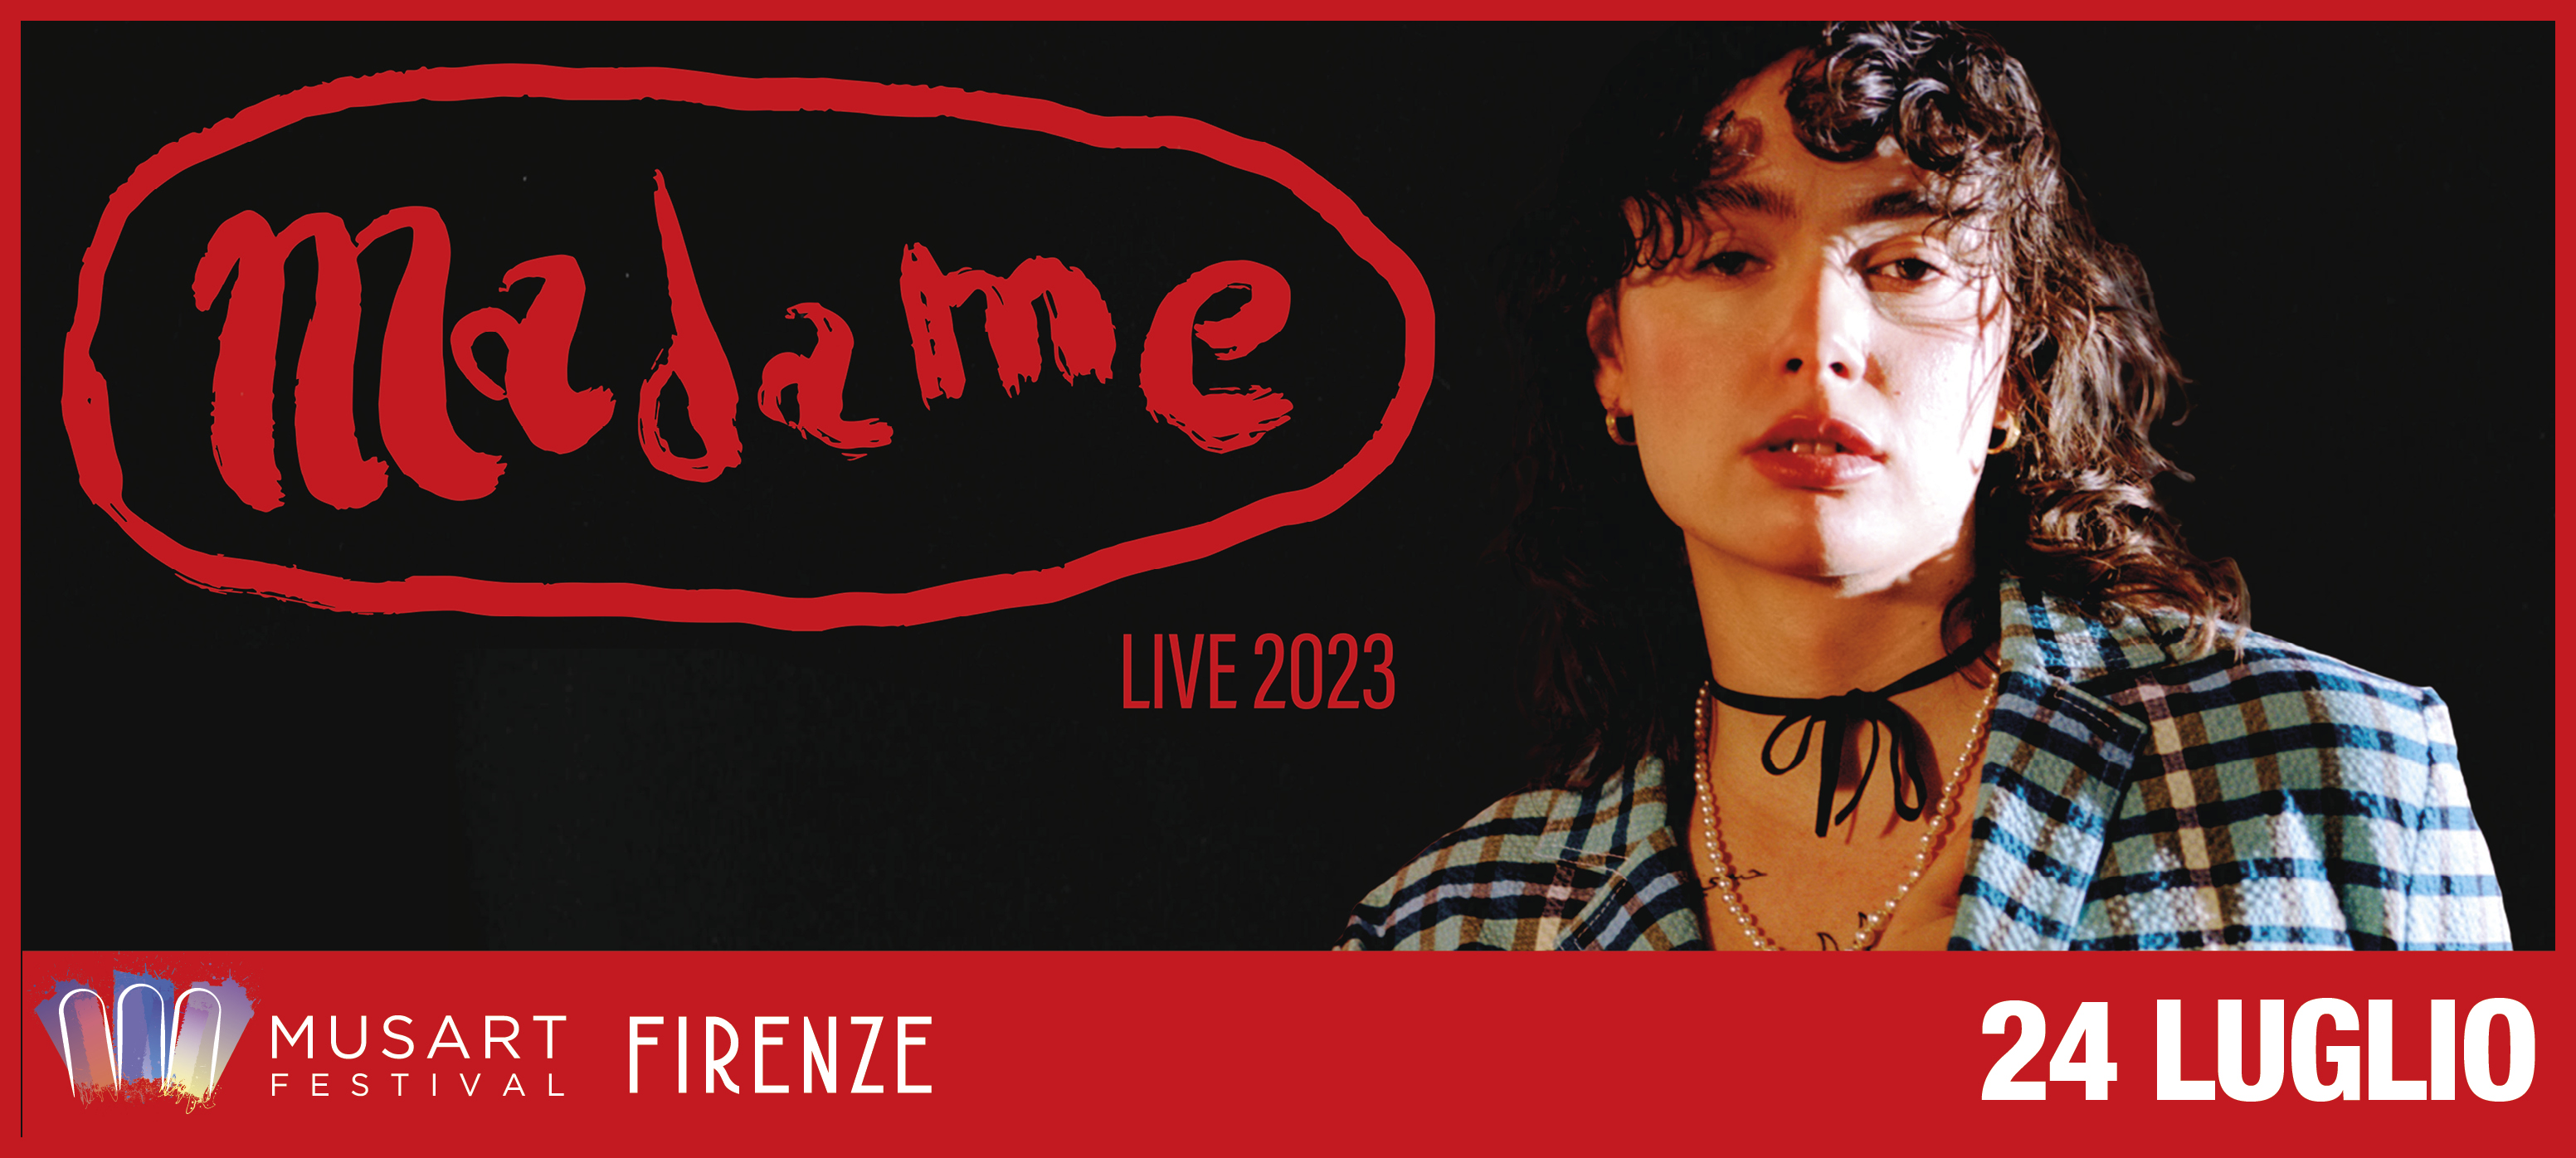 Madame Live 2023 - 24 Luglio - ore 21:15